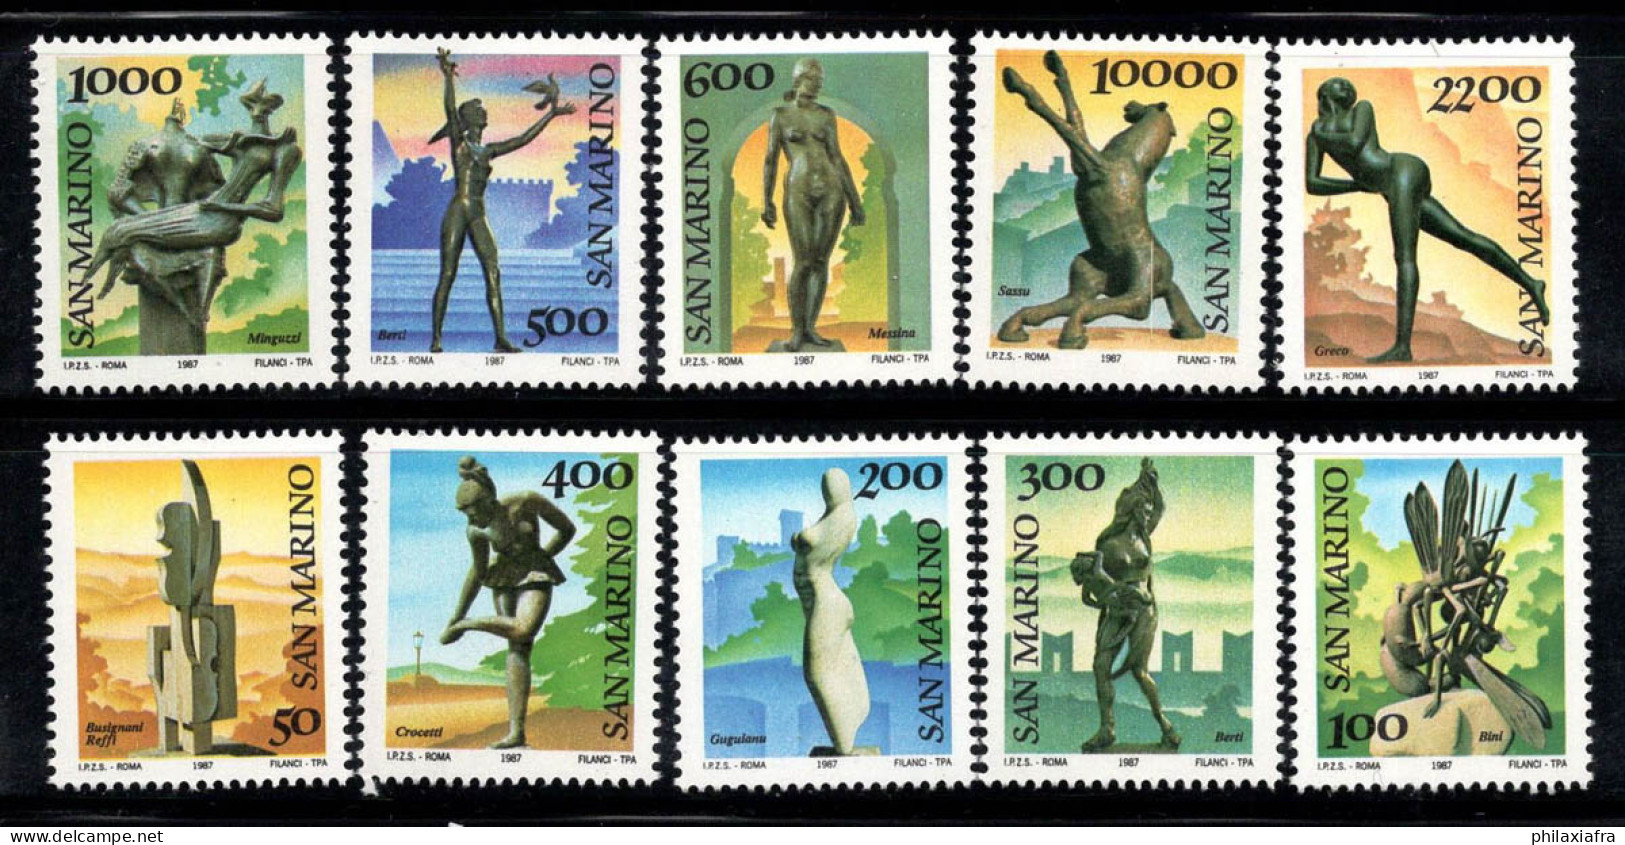 Saint-Marin 1987 Sass. 1203-1212 Neuf ** 100% Art, Sculptures - Unused Stamps